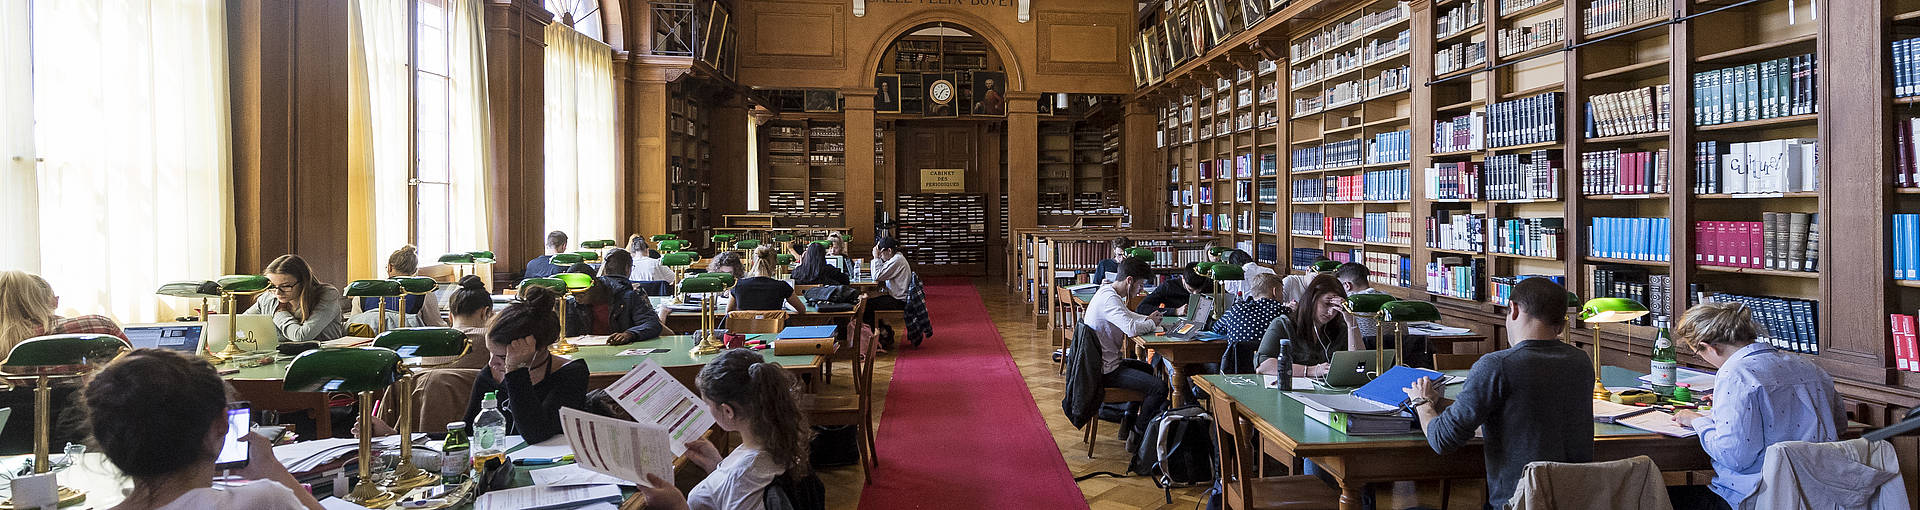 L'intérieur de la bibliothèque publique de Neuchâtel, avec des rayonnages de livres et des étudiants attentifs